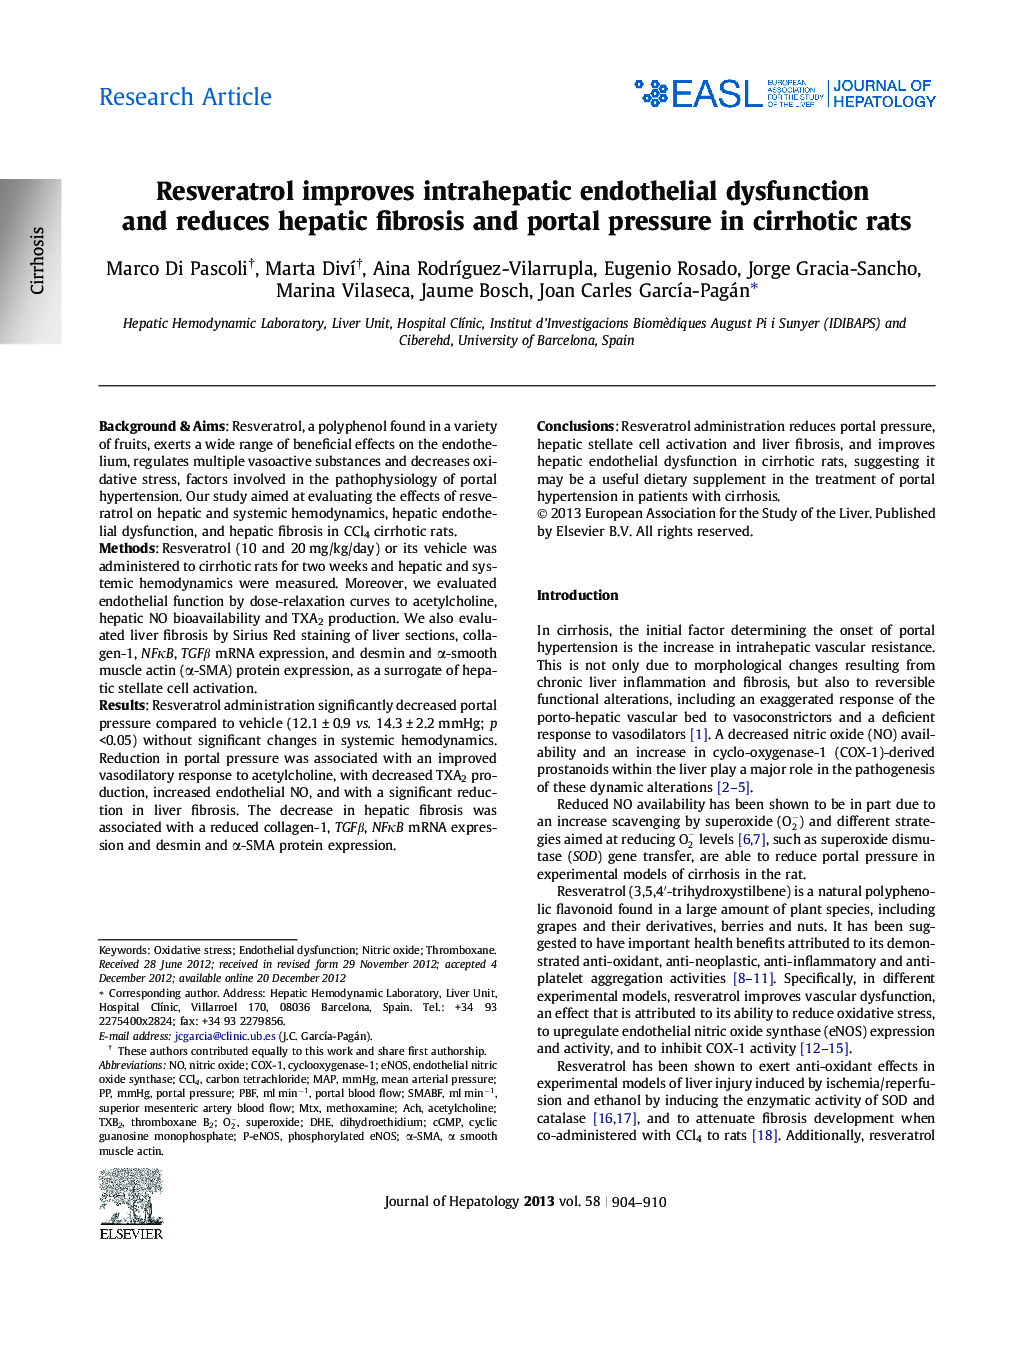 مقاله پژوهشی مقاله استرساترول بهبود اختلال اندوتلیال داخل ادراری و کاهش فیبروز کبدی و فشار پورتال در موش های صحرایی 